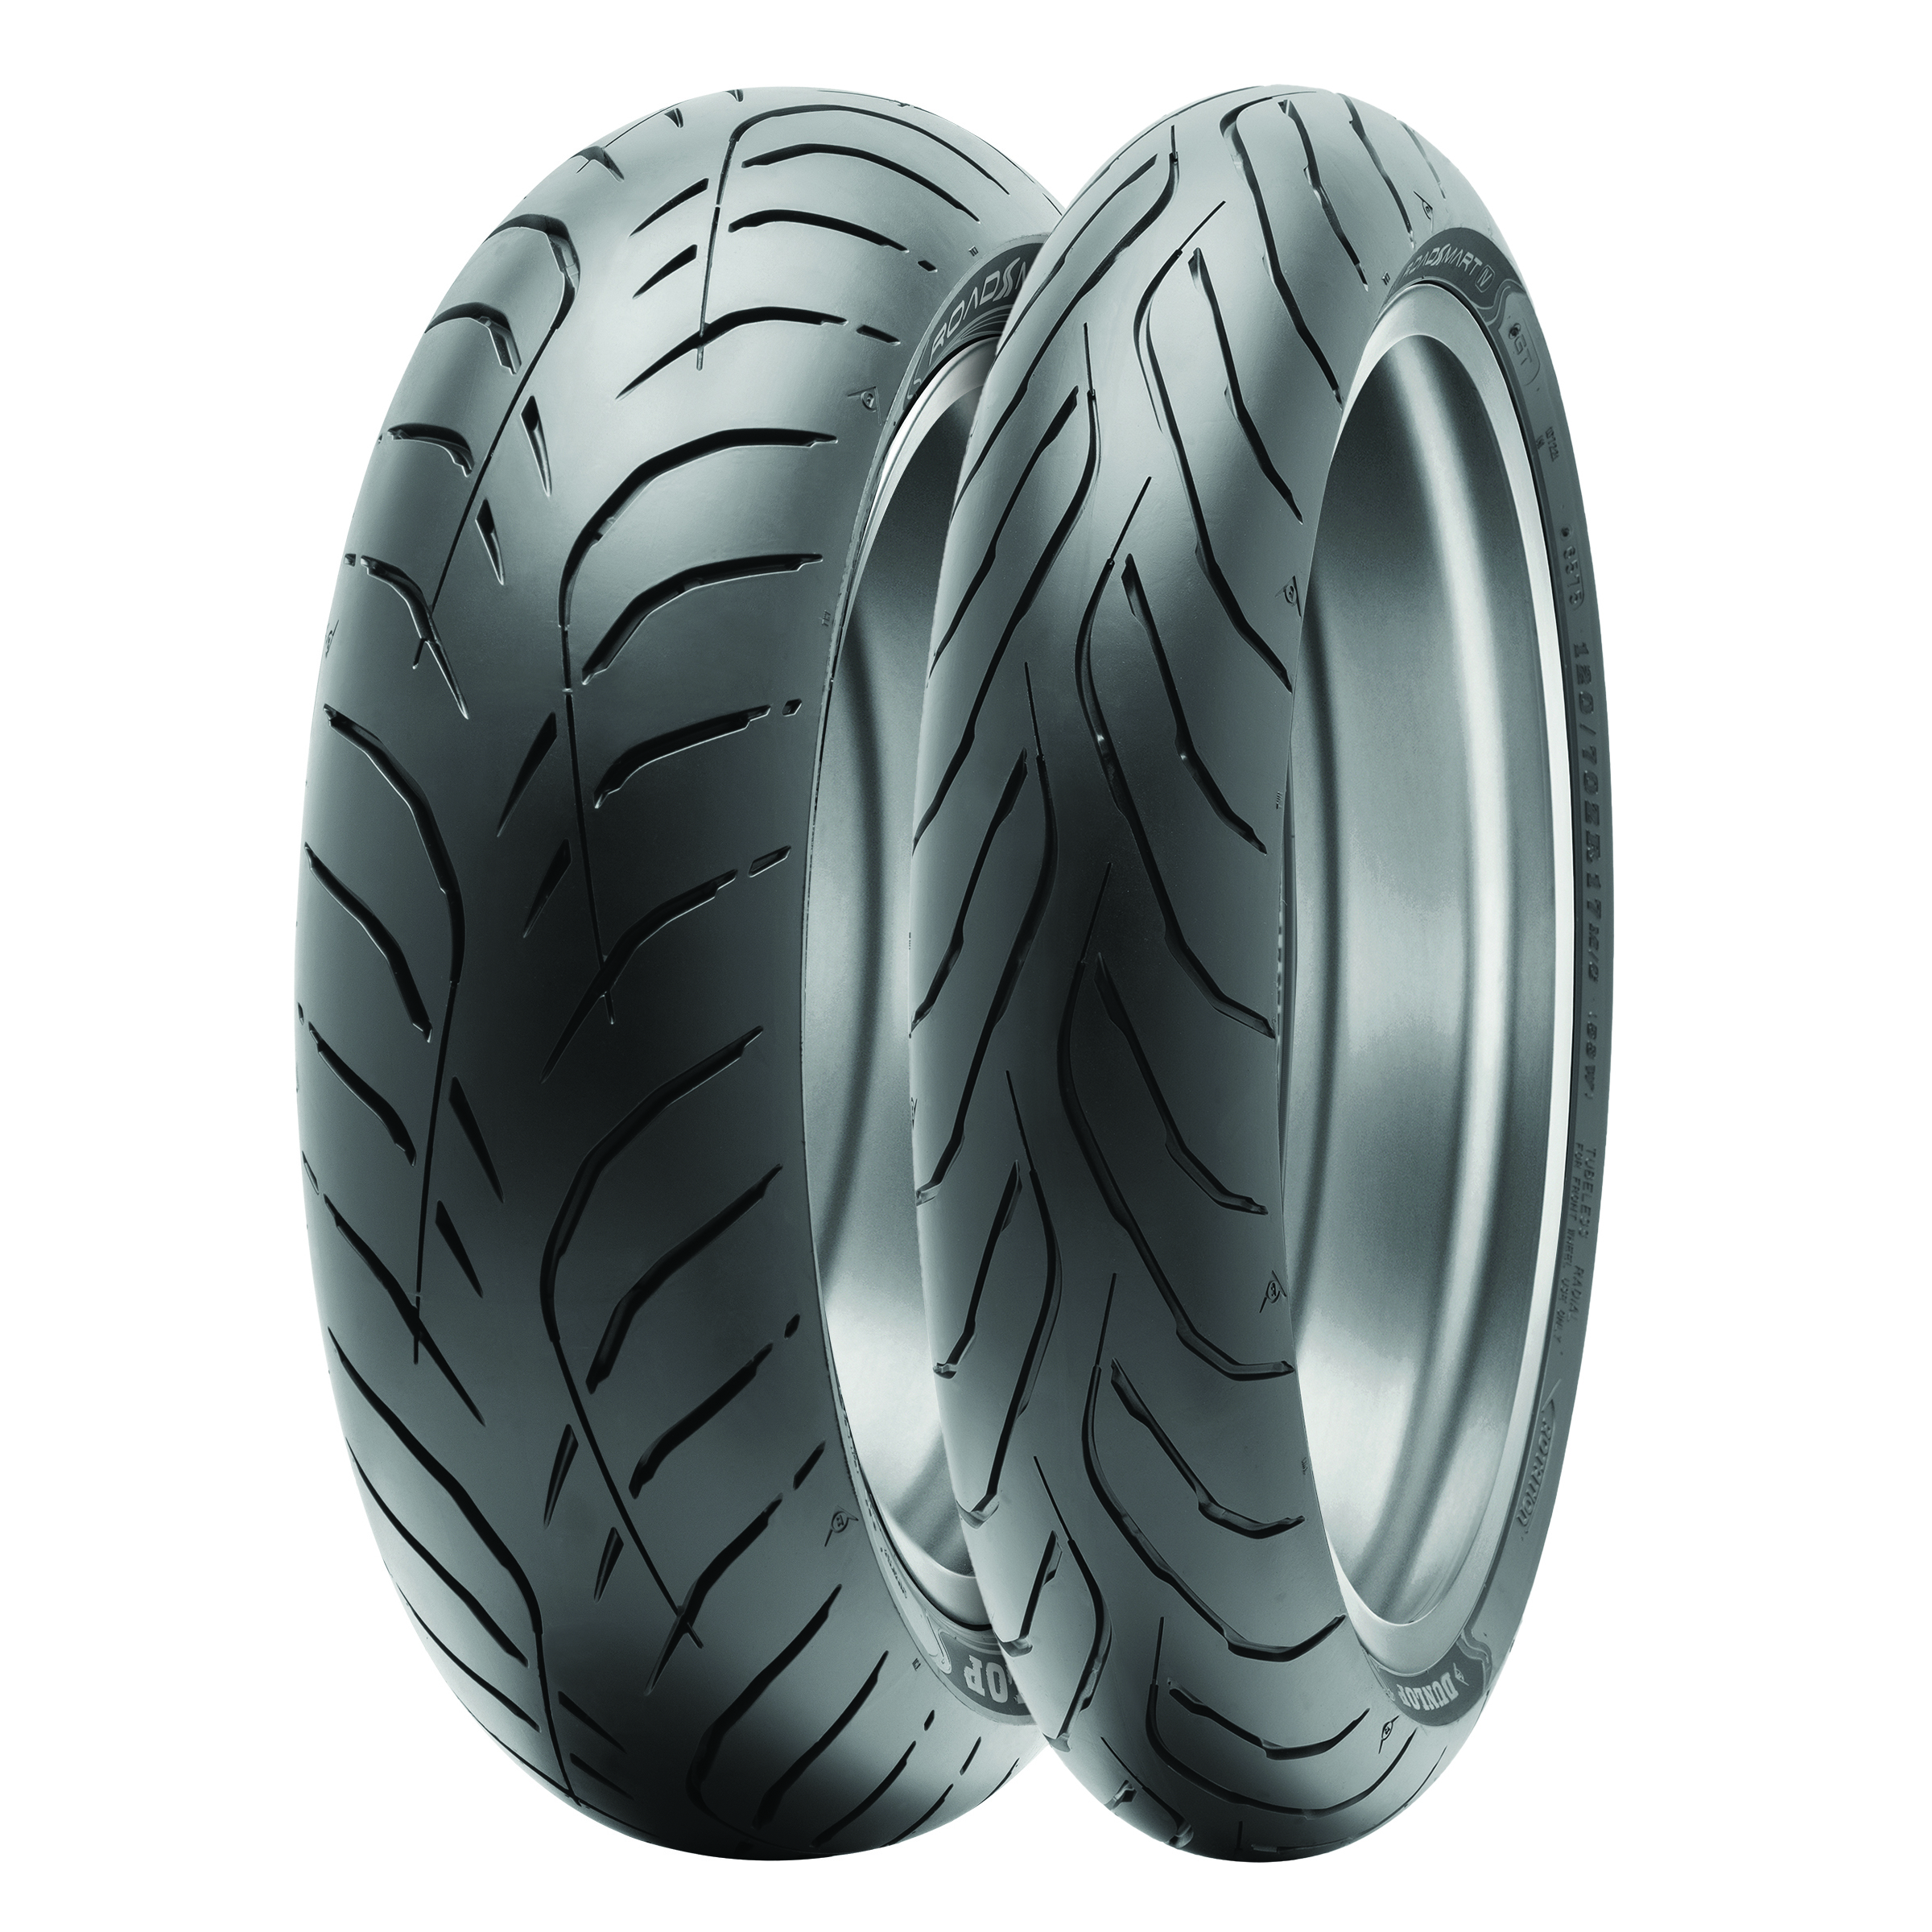 Gomme Nuove Dunlop 190/60 R17 78W SPORTMAX ROADSMART IV pneumatici nuovi Estivo